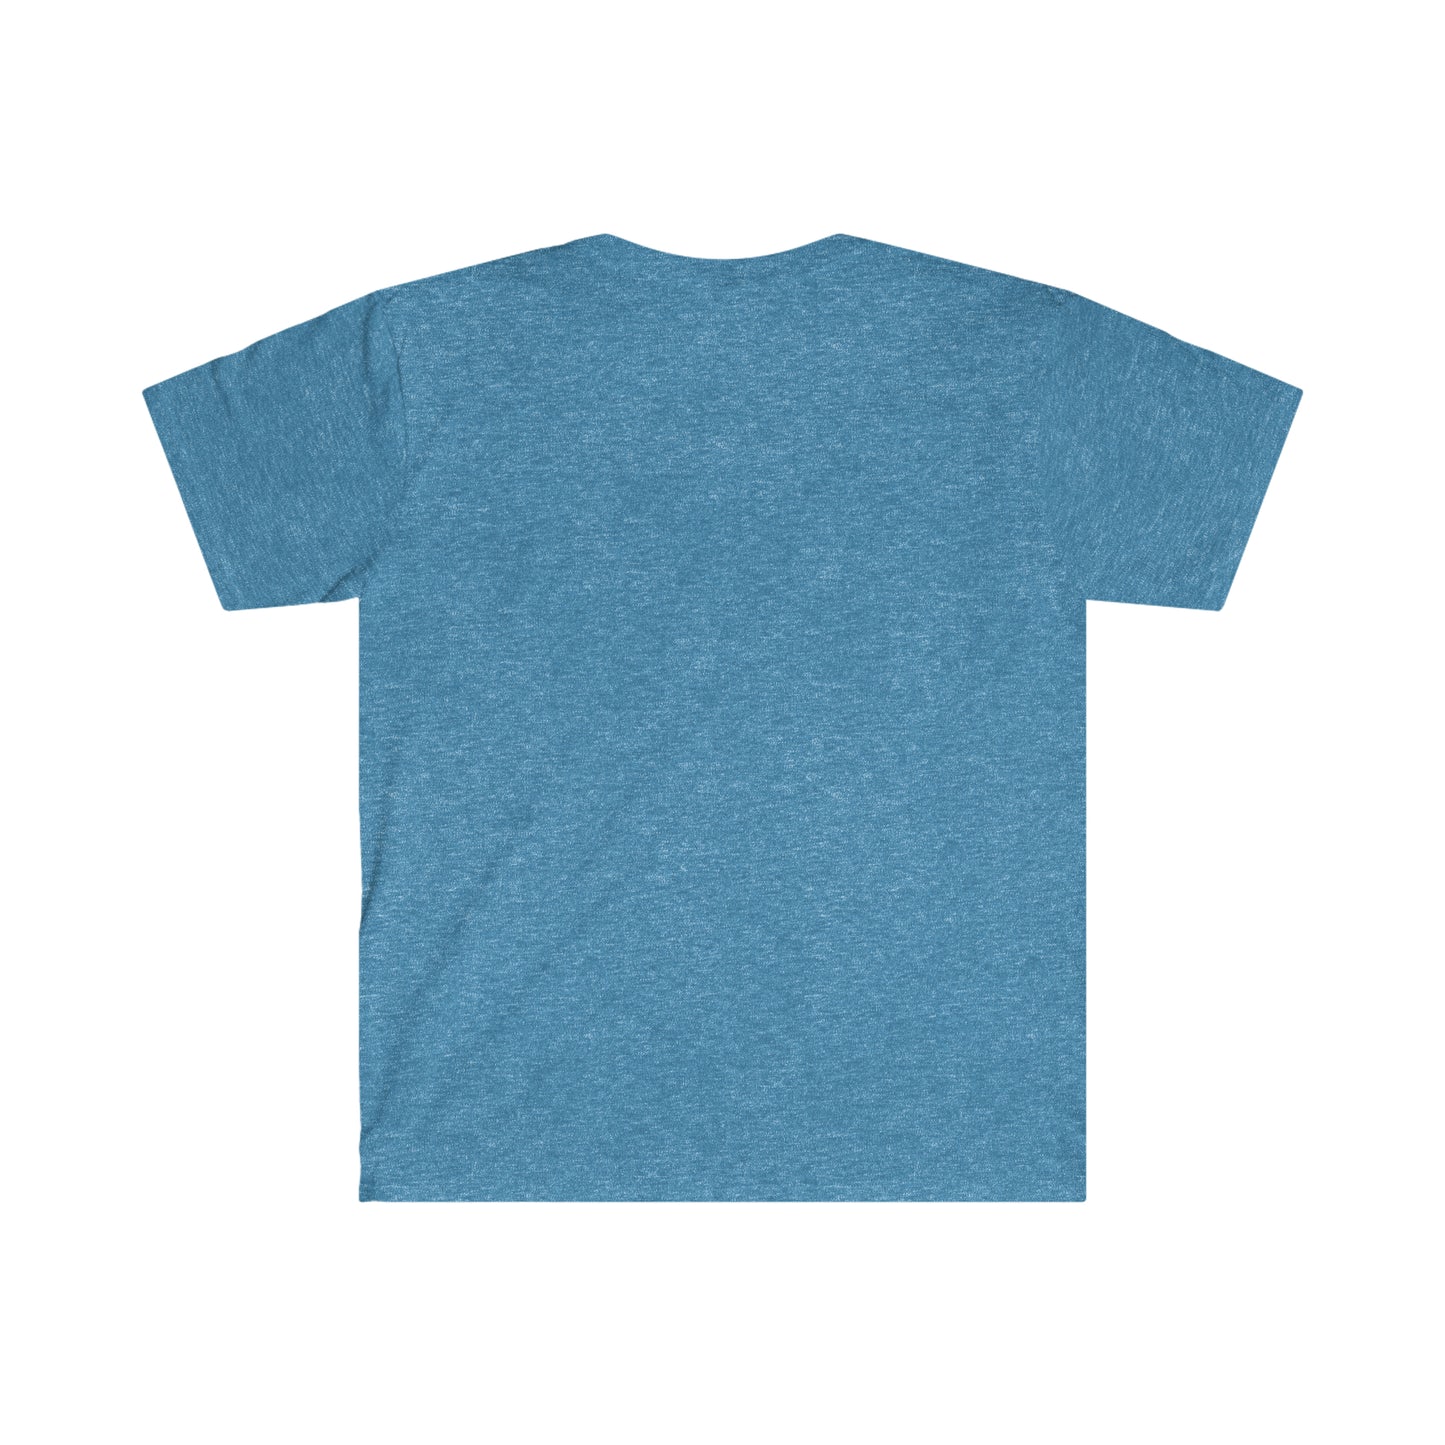 I Object Unisex Softstyle T-Shirt